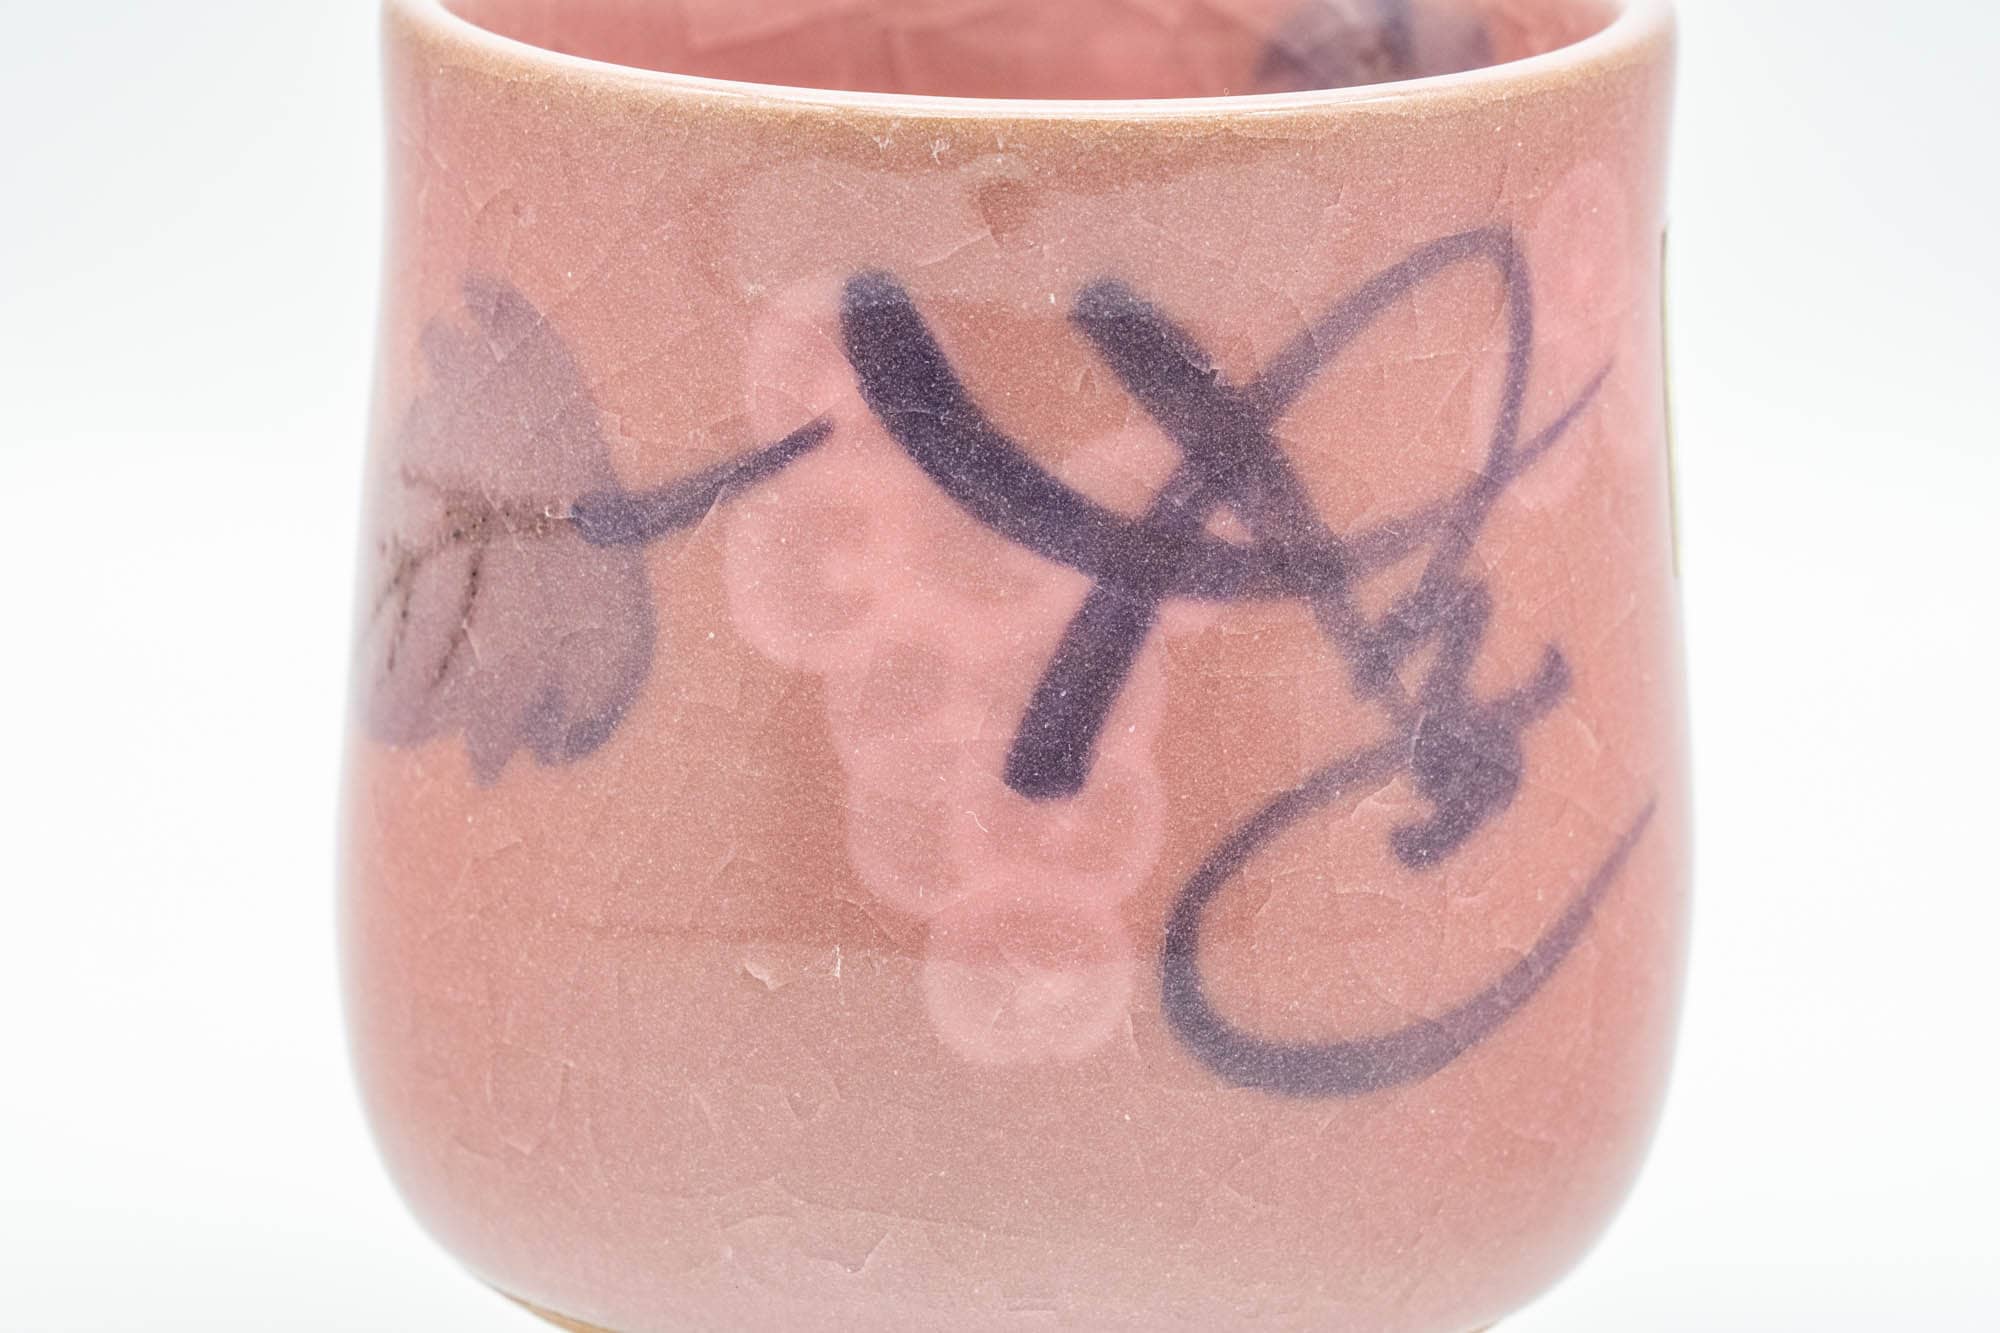 Japanese Teacup - Pink Purple Kanji Celadon Glazed Yunomi - 130ml - Tezumi